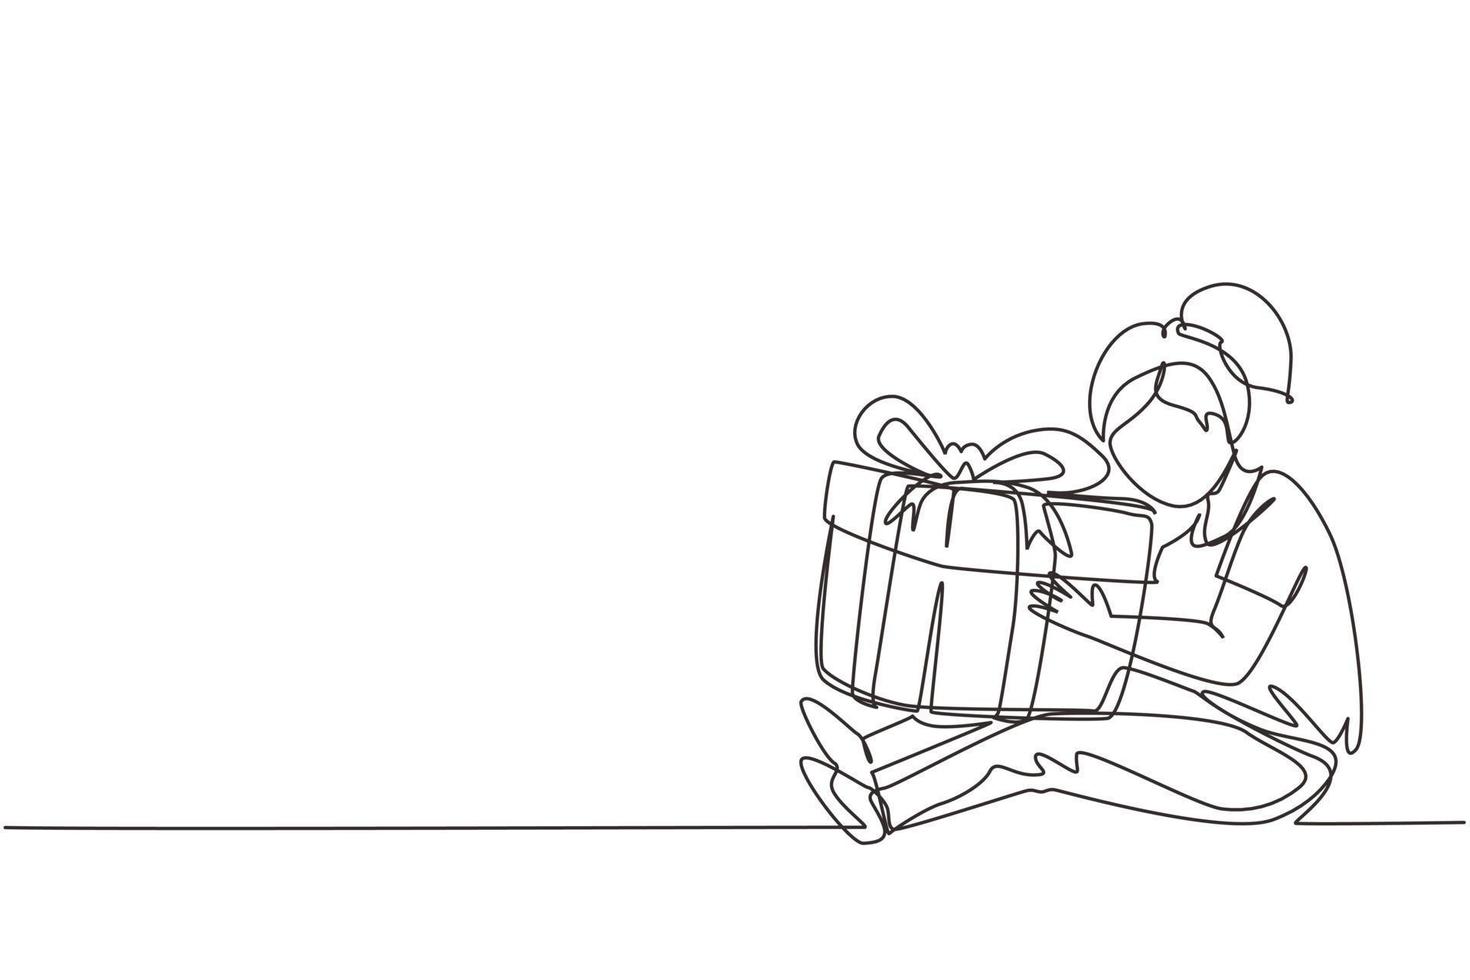 Kontinuierliche einzeilige Zeichnung fröhliches Mädchen, das sitzt und eine große Geschenkbox mit Schleife umarmt, die vor ihr in die Arme gewickelt ist. kleines Kind nimmt Geburtstagsgeschenk an. einzeiliges zeichnen design vektorillustration vektor